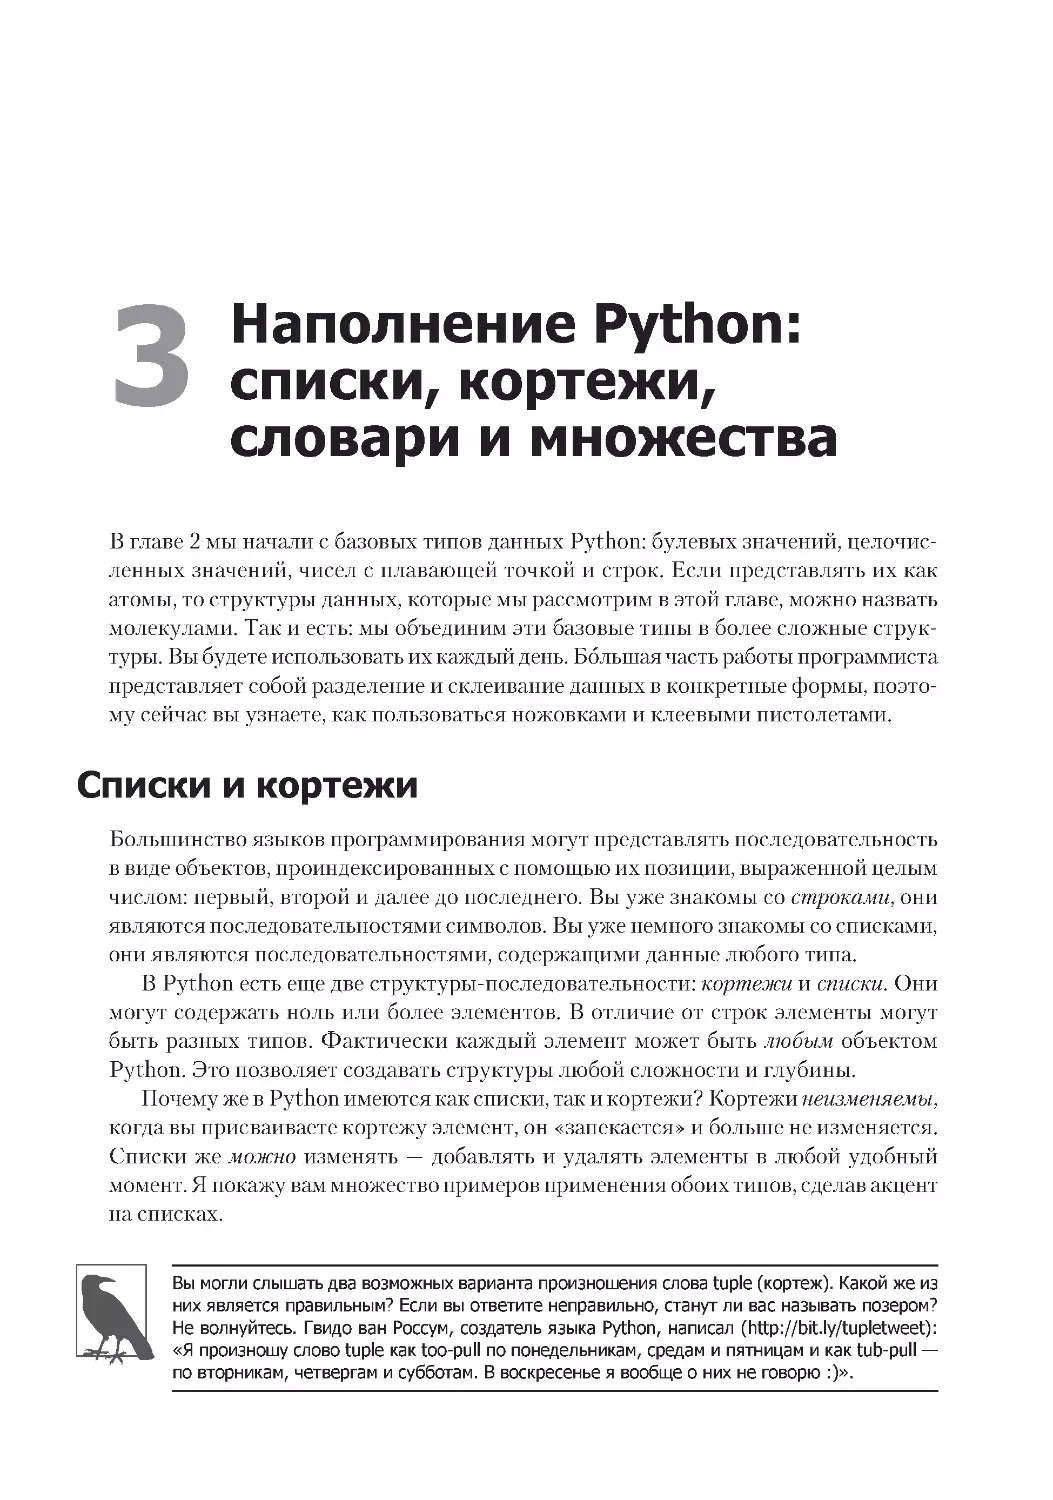 Глава 3. Наполнение Python
Списки и кортежи